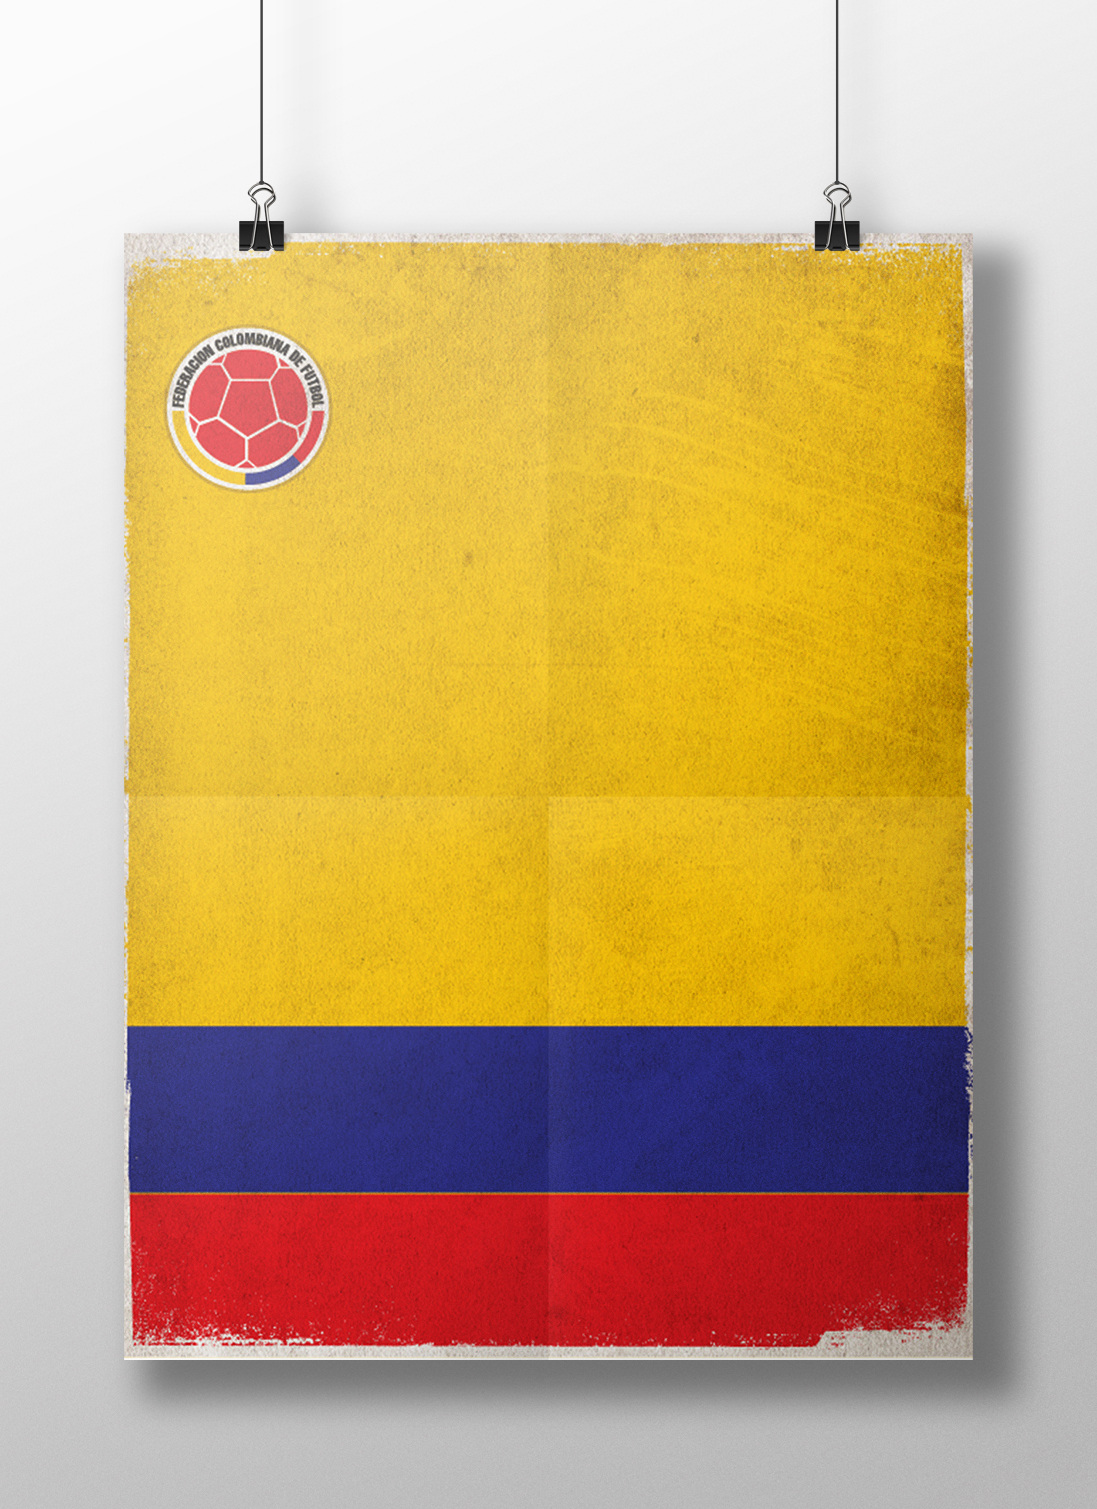 Futbol soccer world cup poster graphics cartel minimalist Fussball copa do mundo copa del mundo